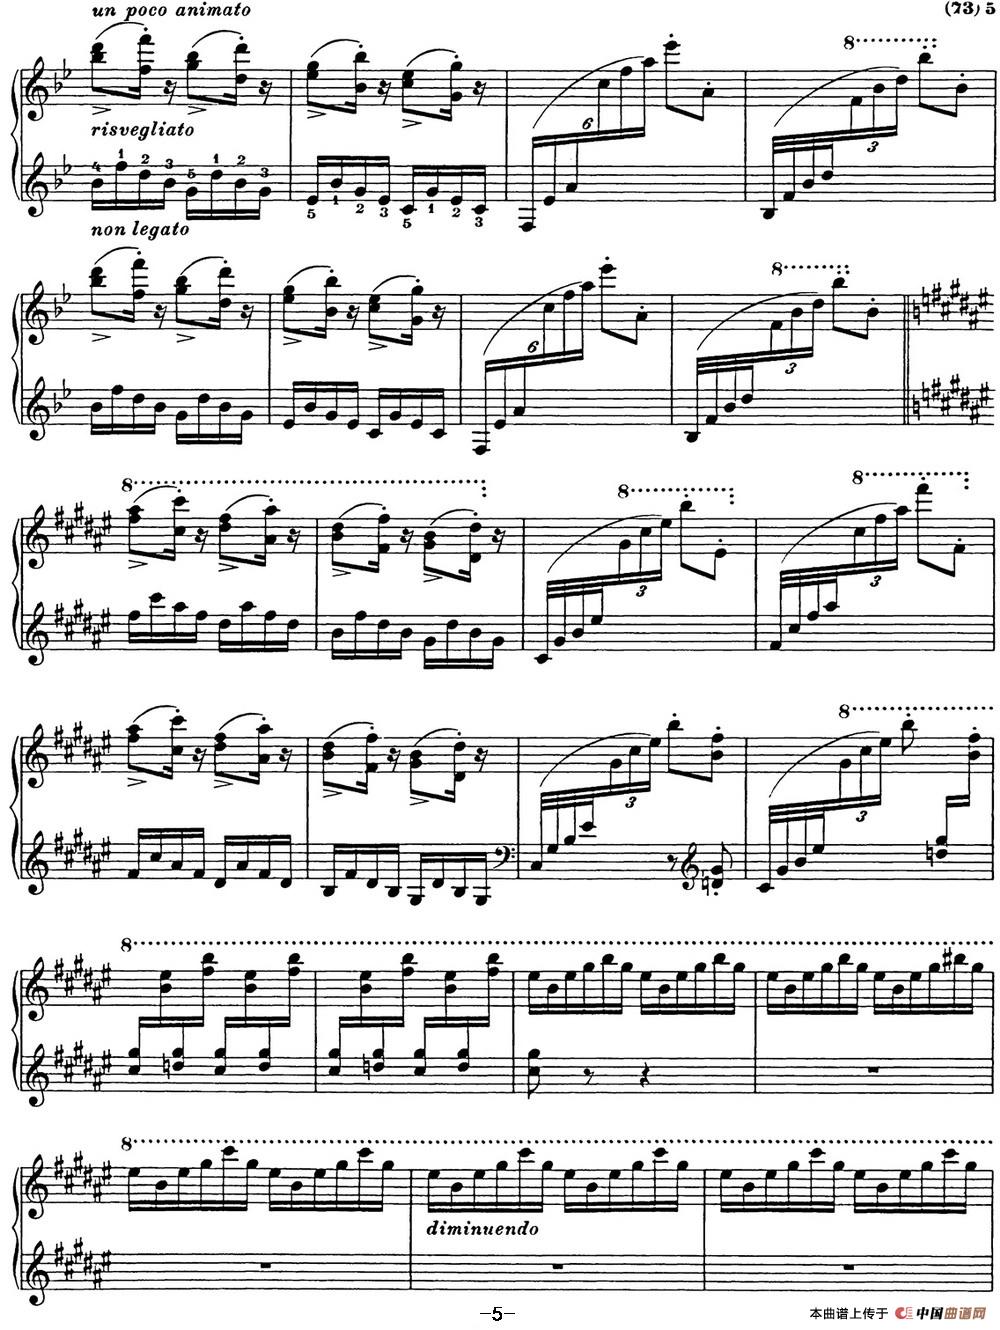 《李斯特 匈牙利狂想曲 Hungarian Rhapsodies S.244 No.8》钢琴曲谱图分享